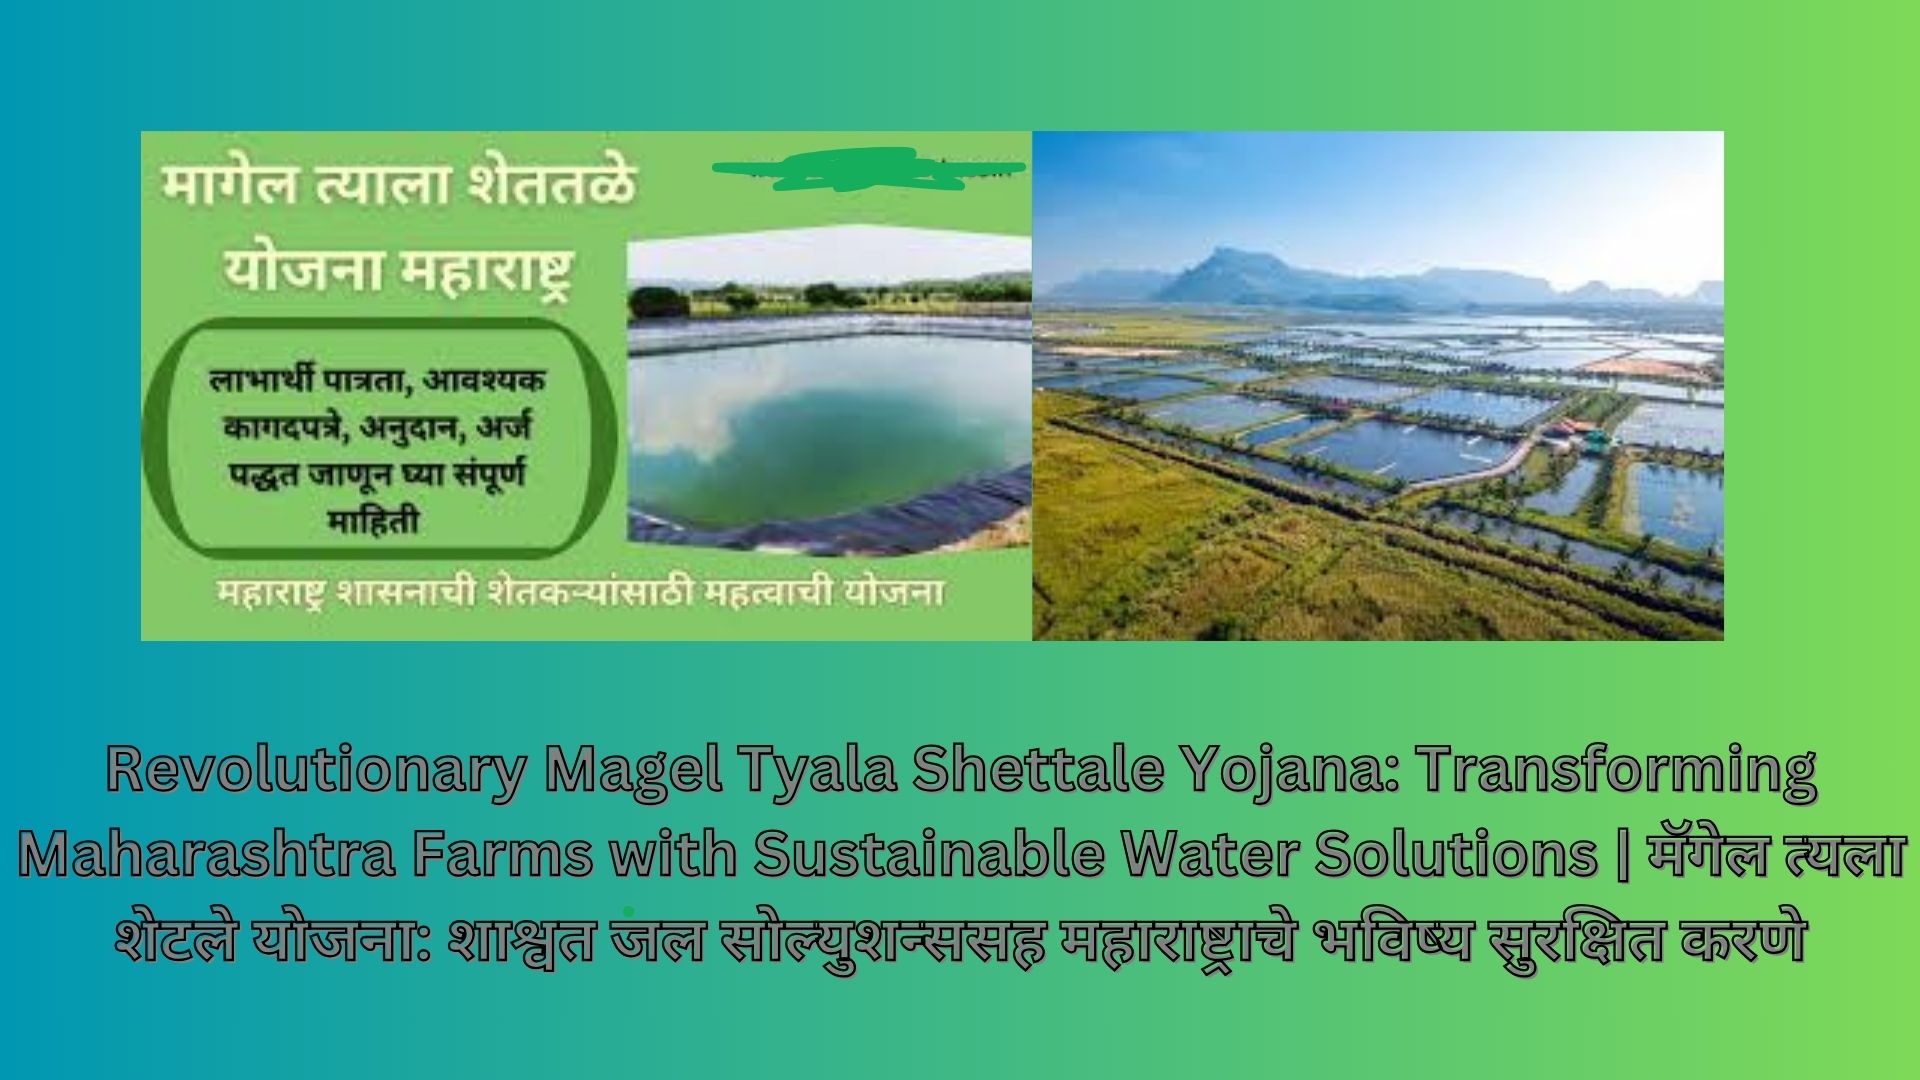 Revolutionary Magel Tyala Shettale Yojana: Transforming Maharashtra Farms with Sustainable Water Solutions | मॅगेल त्यला शेटले योजना: शाश्वत जल सोल्युशन्ससह महाराष्ट्राचे भविष्य सुरक्षित करणे